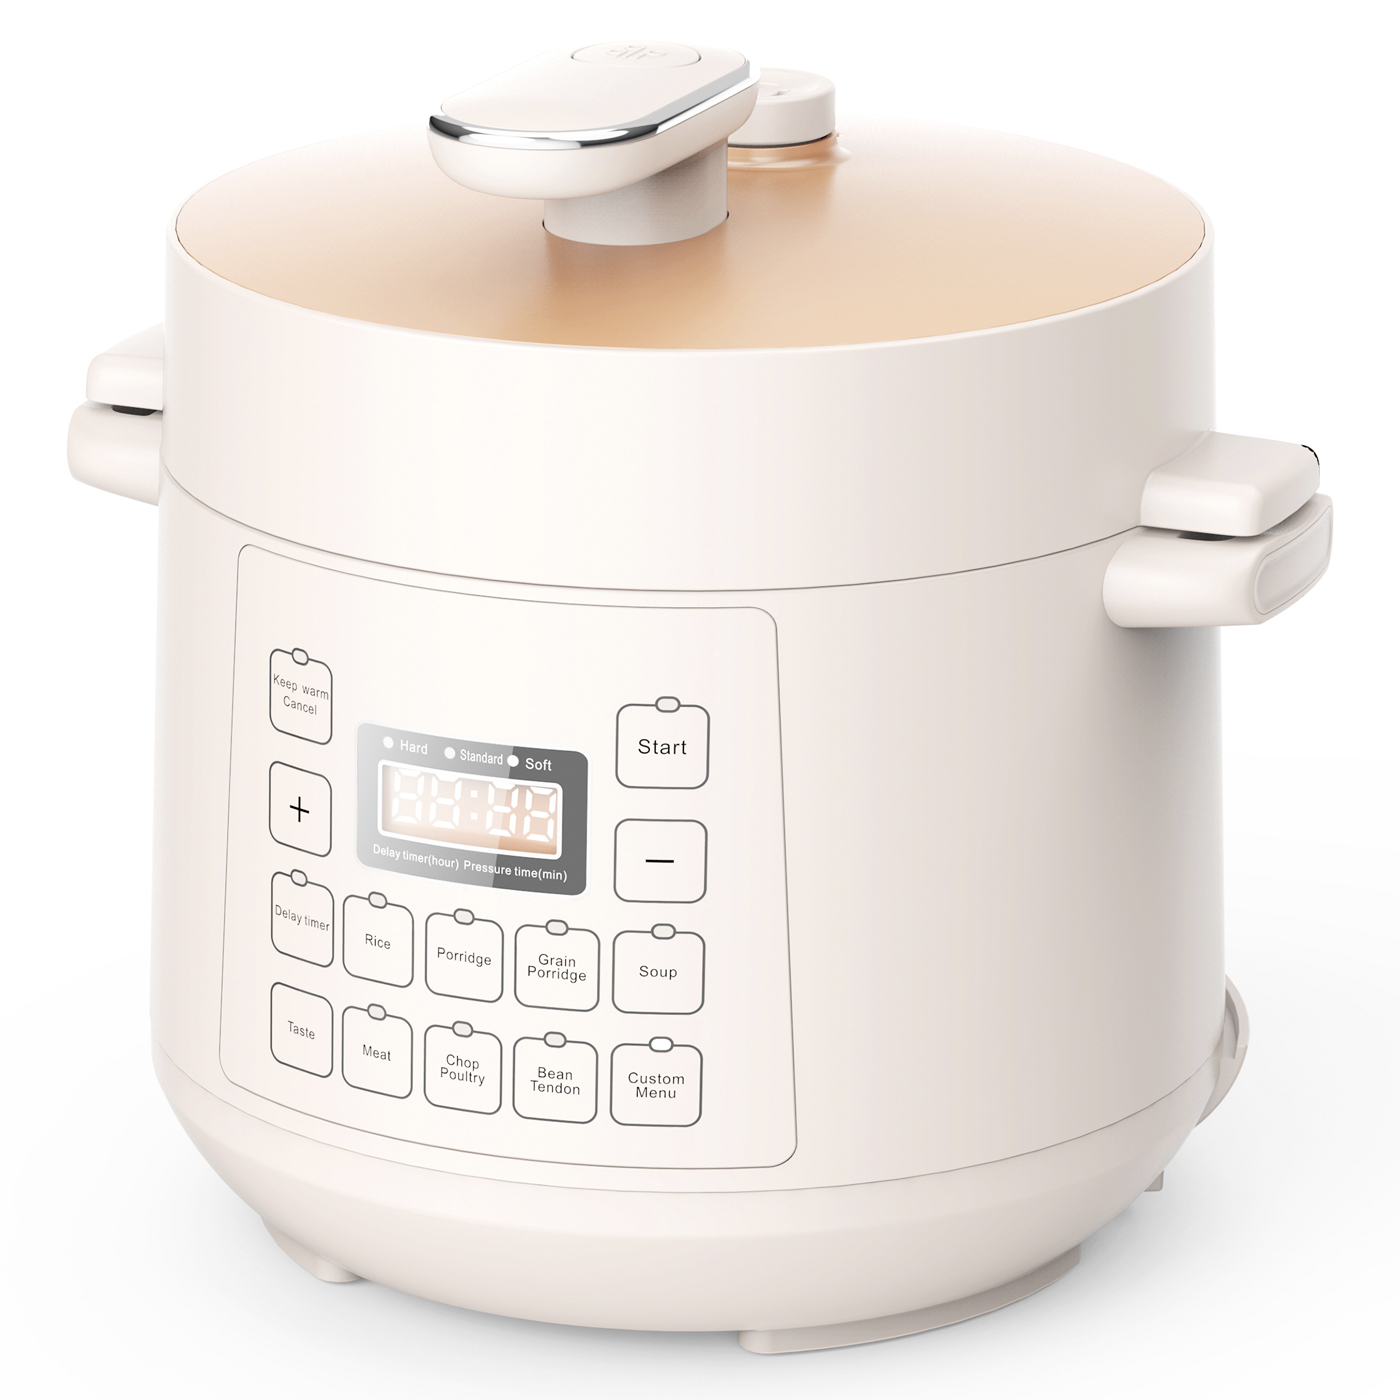 2.5L electric pressure cooker